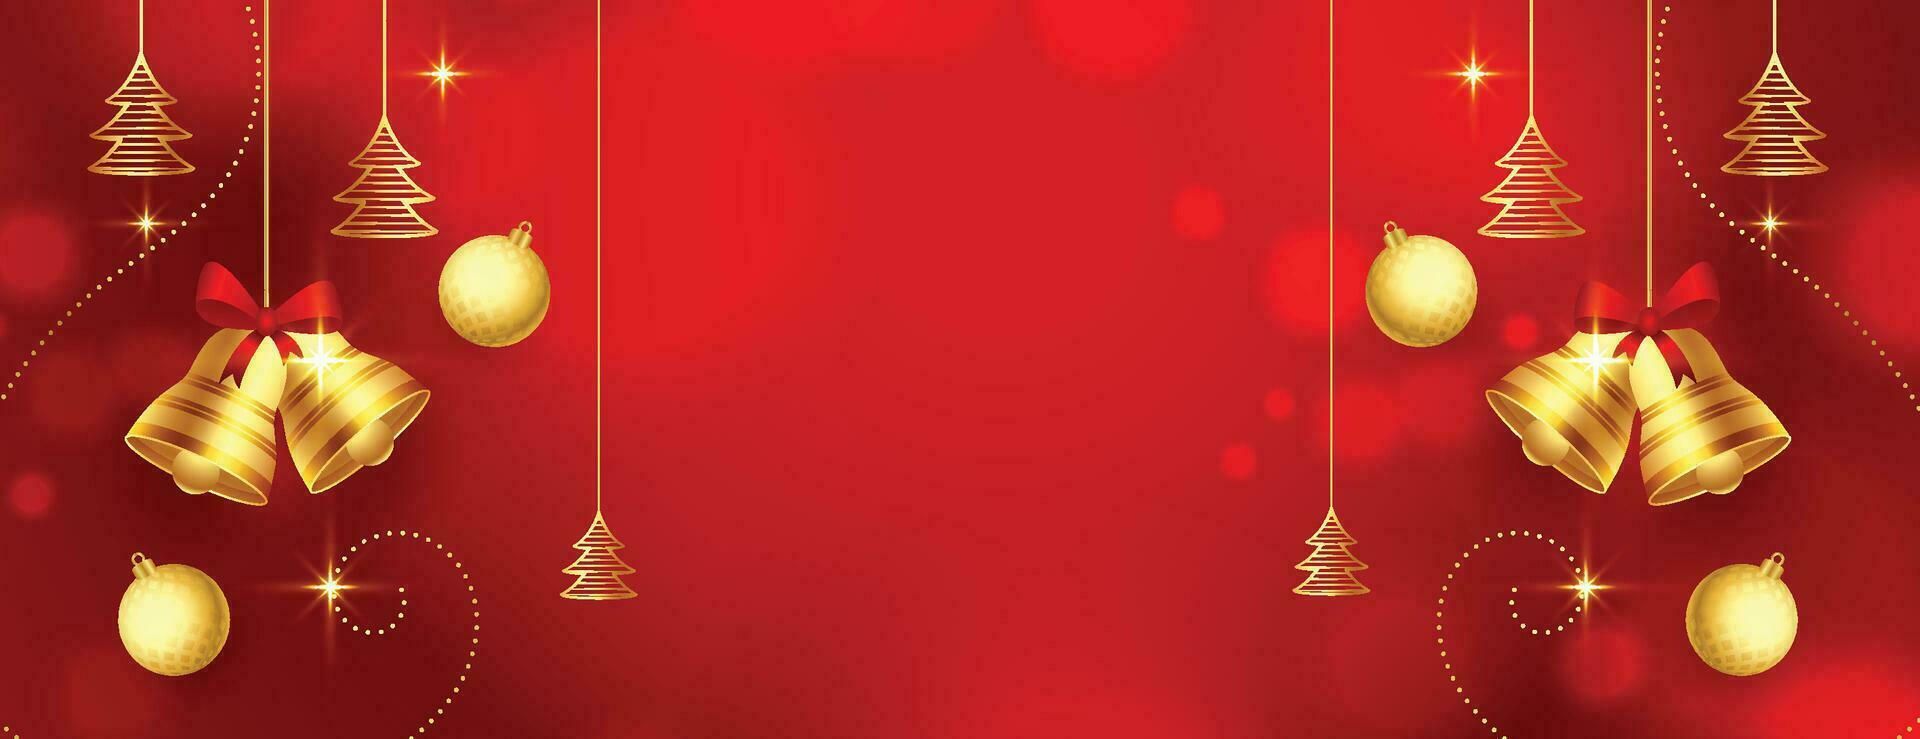 jul bollar, Semester gåvor med gyllene rosett, gran träd grenar, tall koner och skinande stjärnor. illustration kan vara Begagnade för jul design, affischer, kort, webbplatser och banderoller. vektor